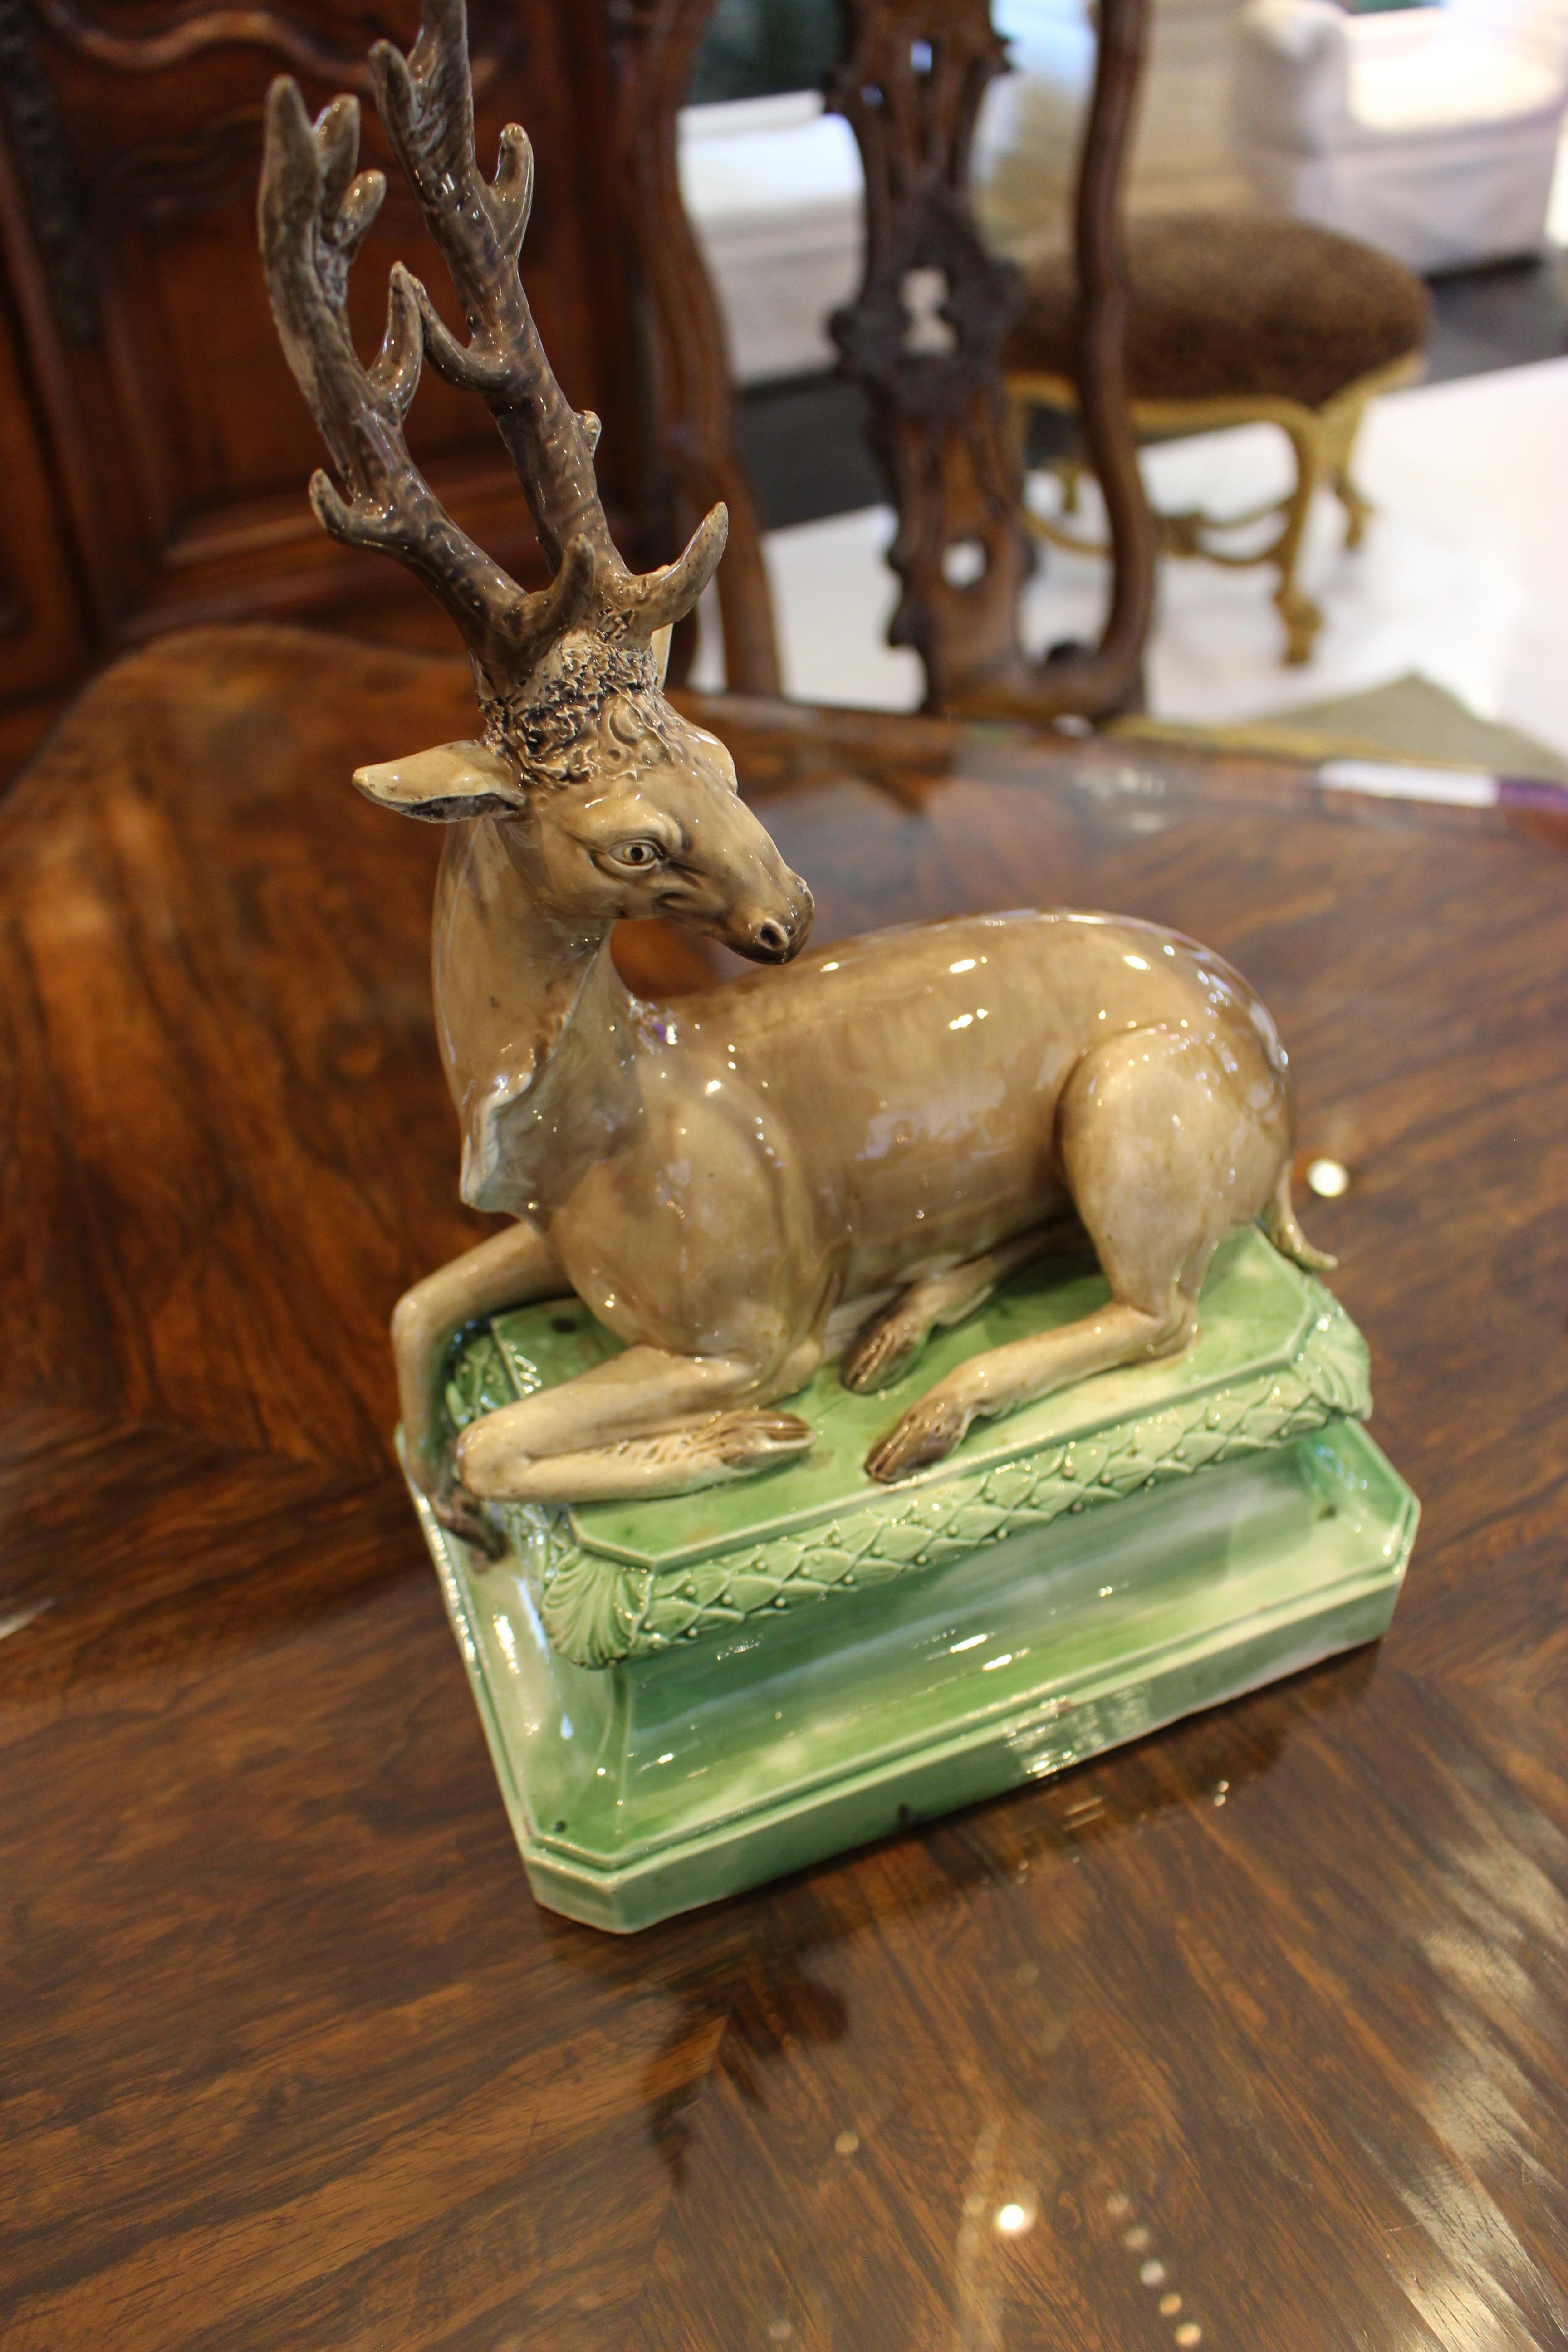 Modèle en céramique perlée de Staffordshire représentant un cerf assis sur une base rectangulaire à pansement vert. De la collection de Peggy et David Rockefeller. Vers 1770.